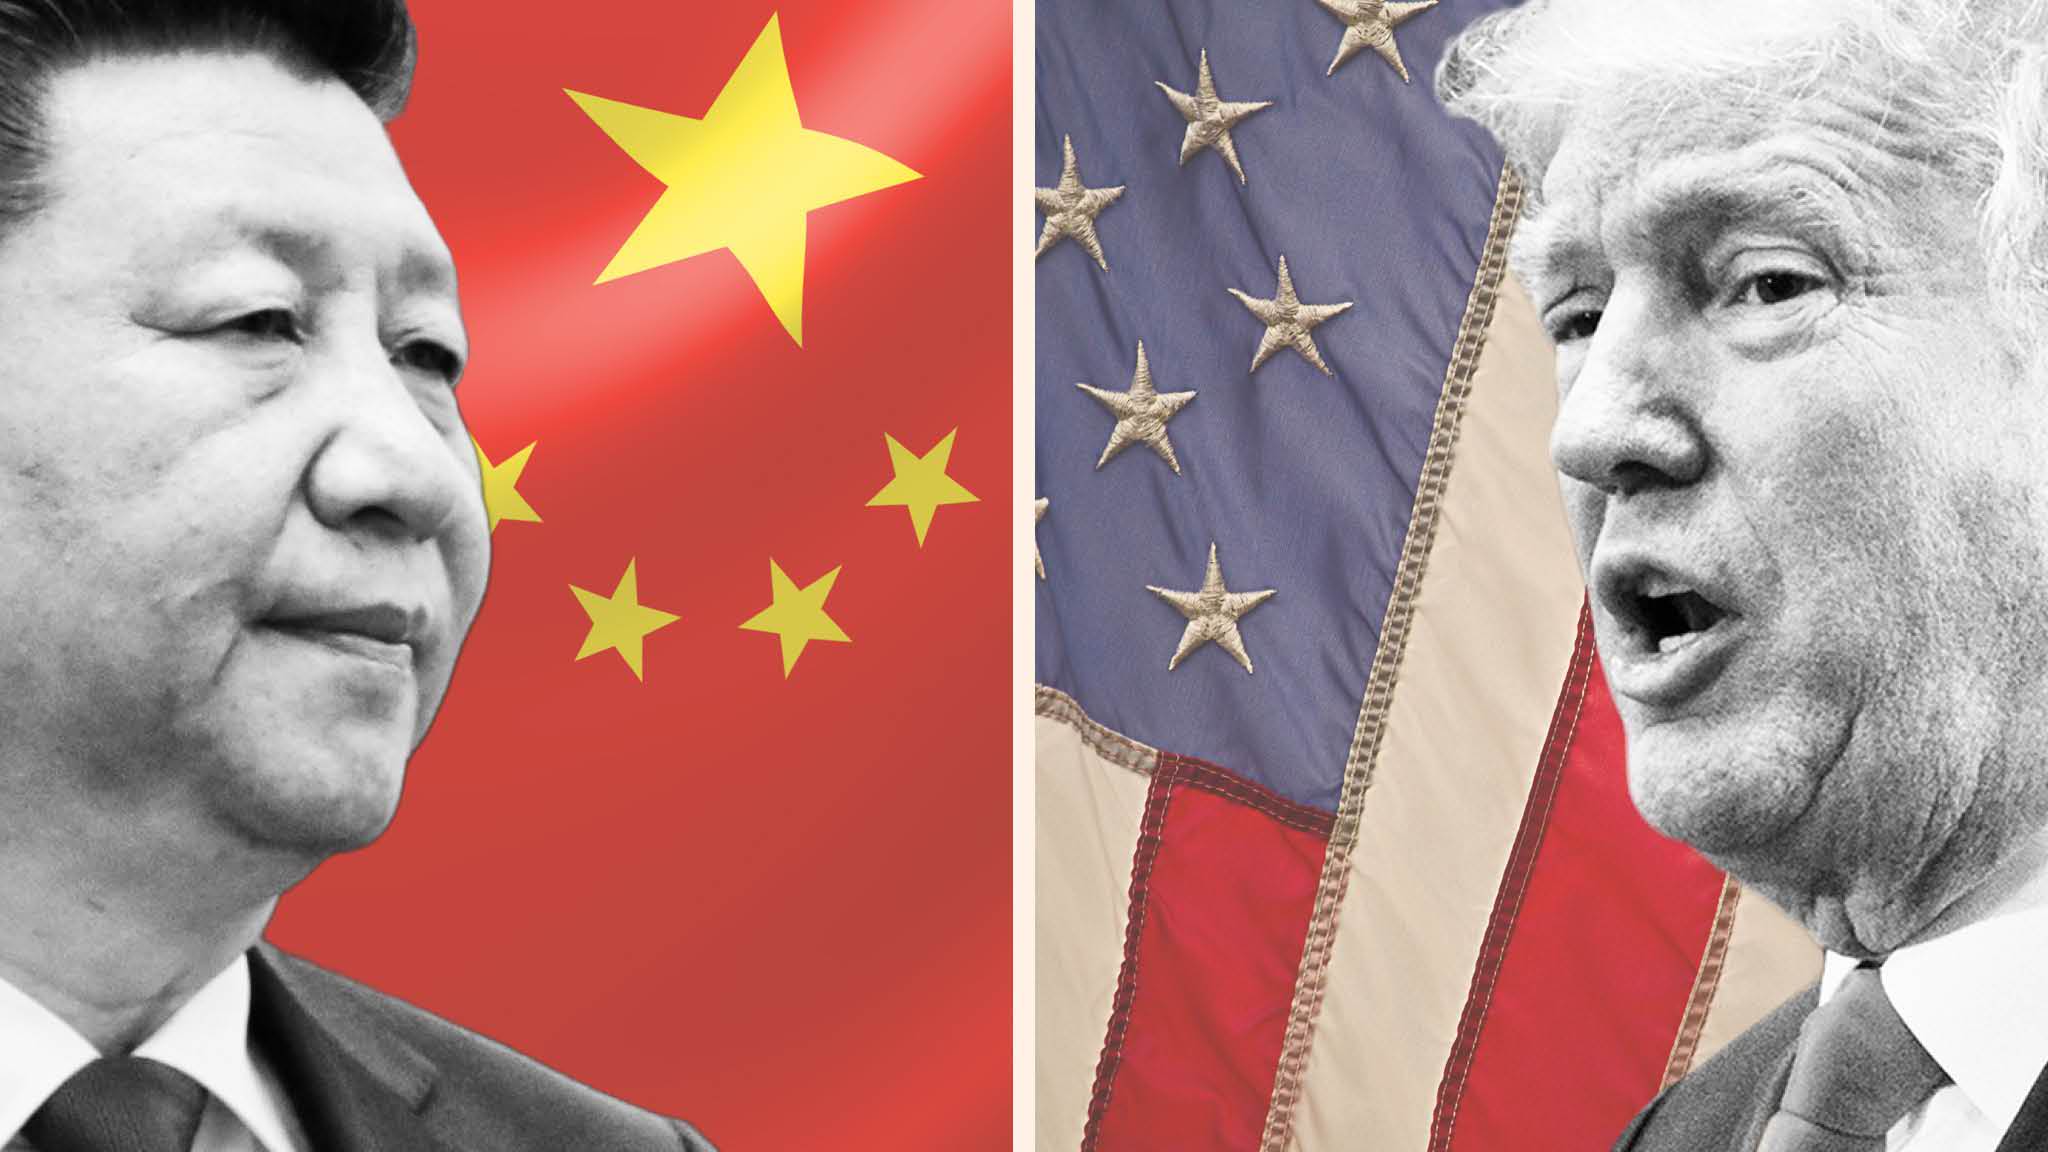 विकासोन्मुख राष्ट्रबारे डब्लुटीओलाई दवाब दिनु अमेरिकाको अभिमानपूर्ण व्यवहार : चीन